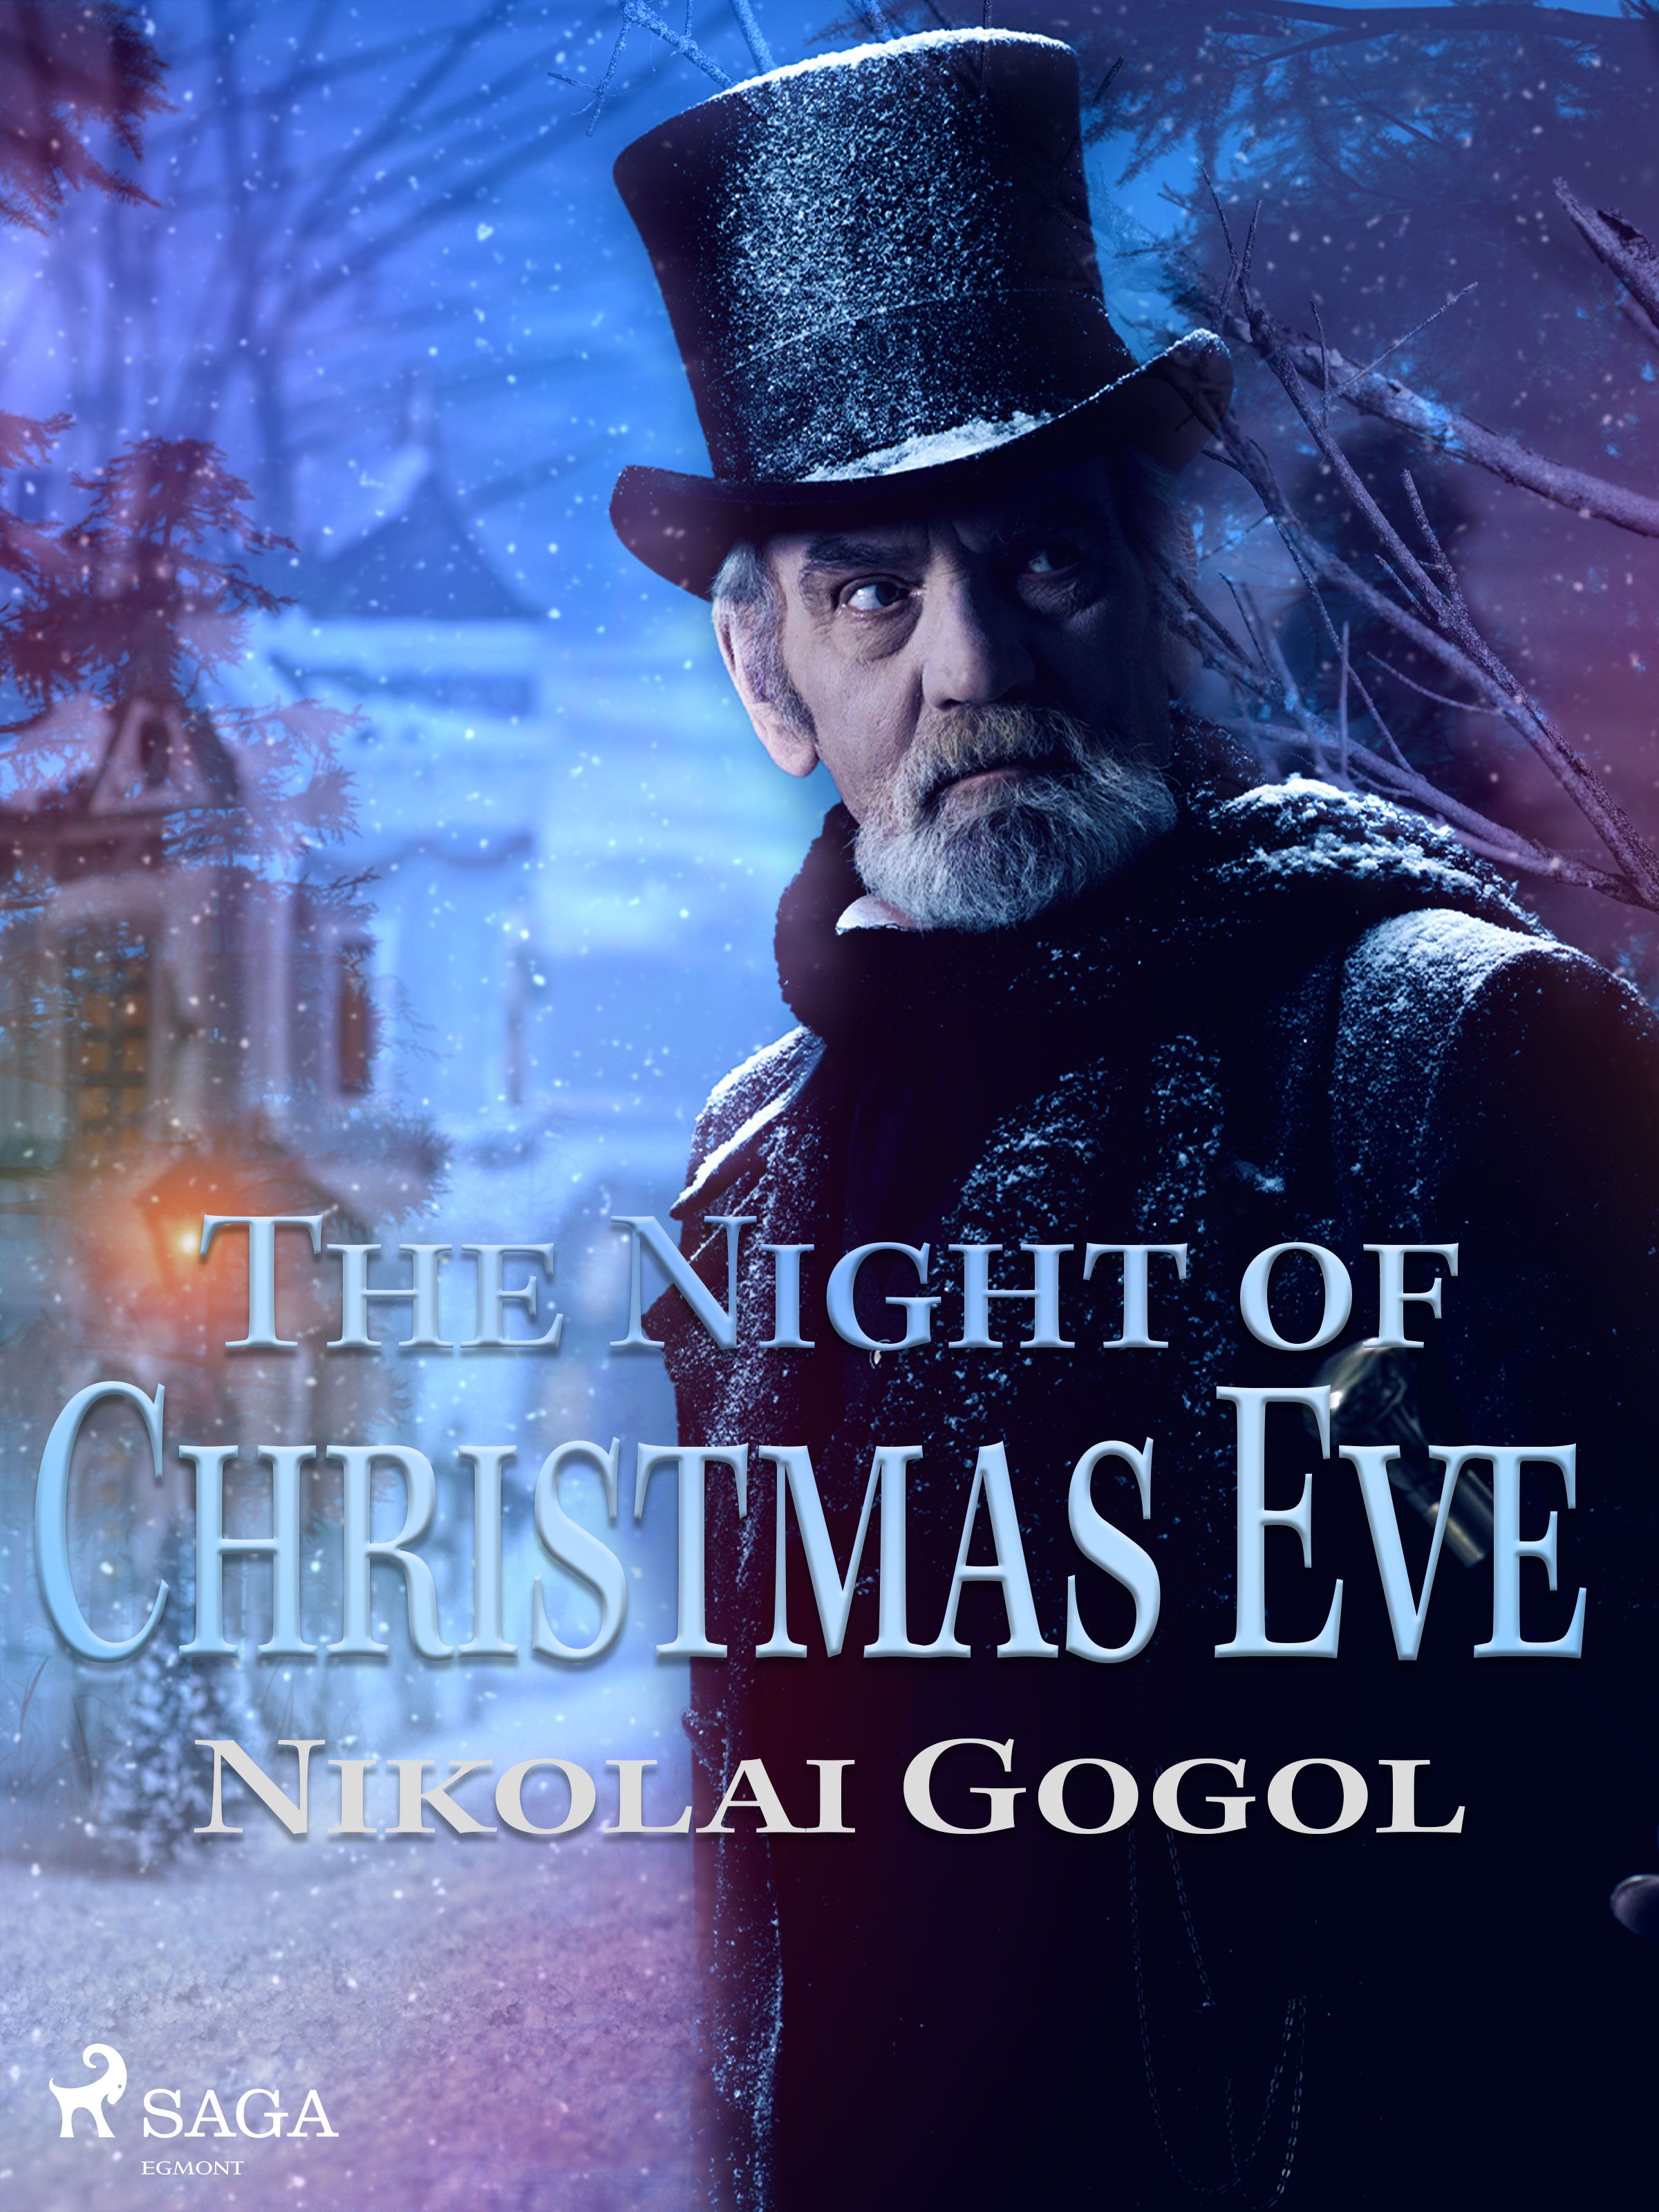 The Night of Christmas Eve, e-bog af Nikolai Gogol